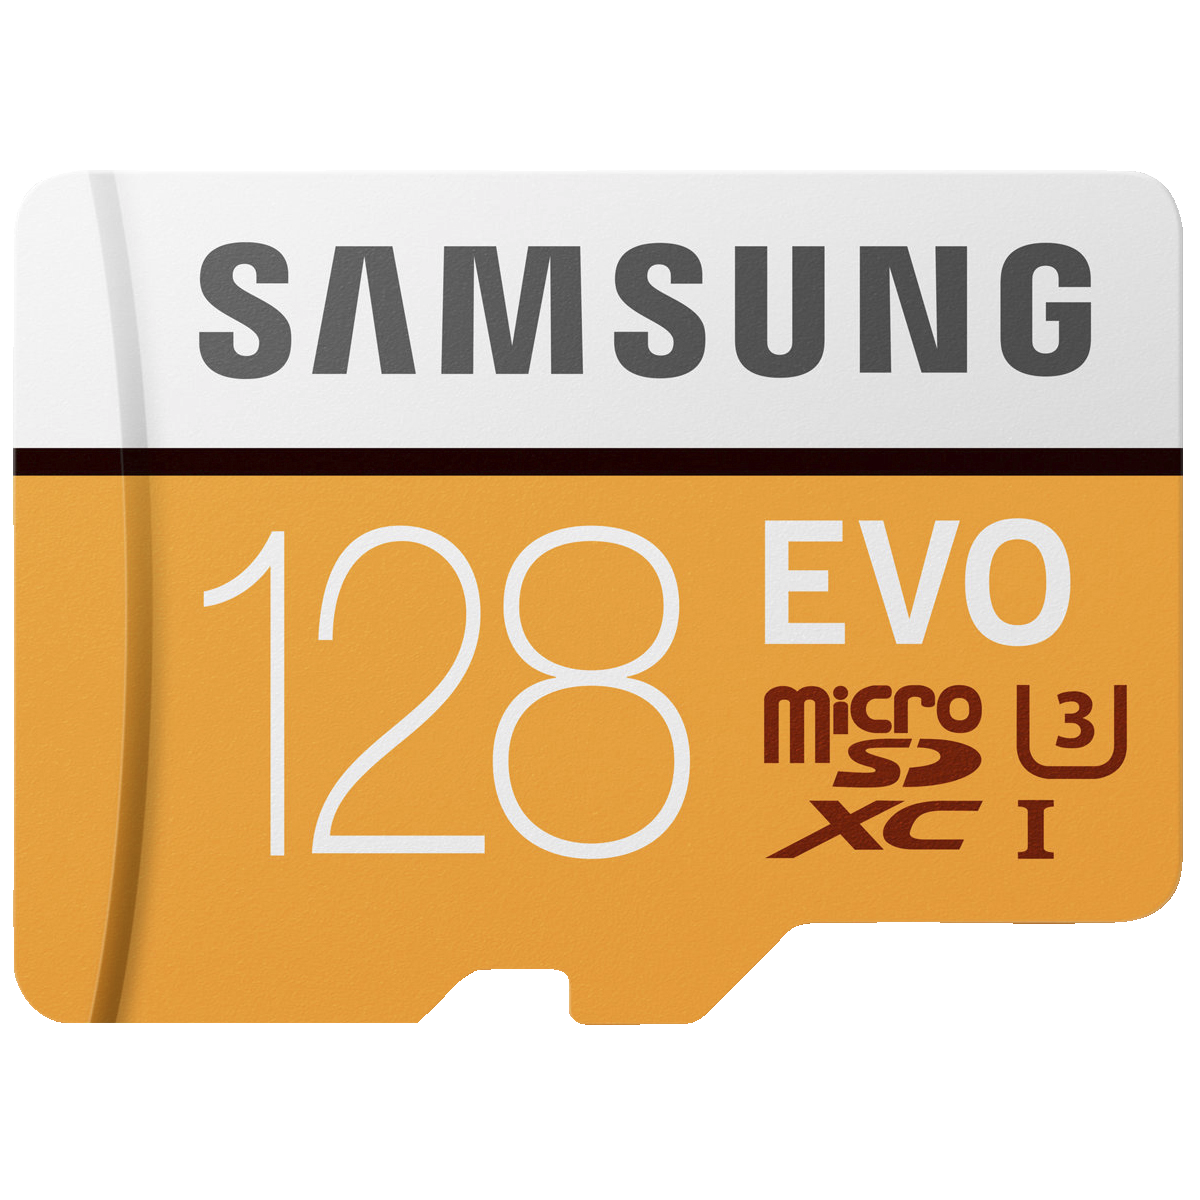 Samsung Evo Micro SDXC UHS-3 minnekort 128 GB - Minnekort og USB-minne -  Elkjøp